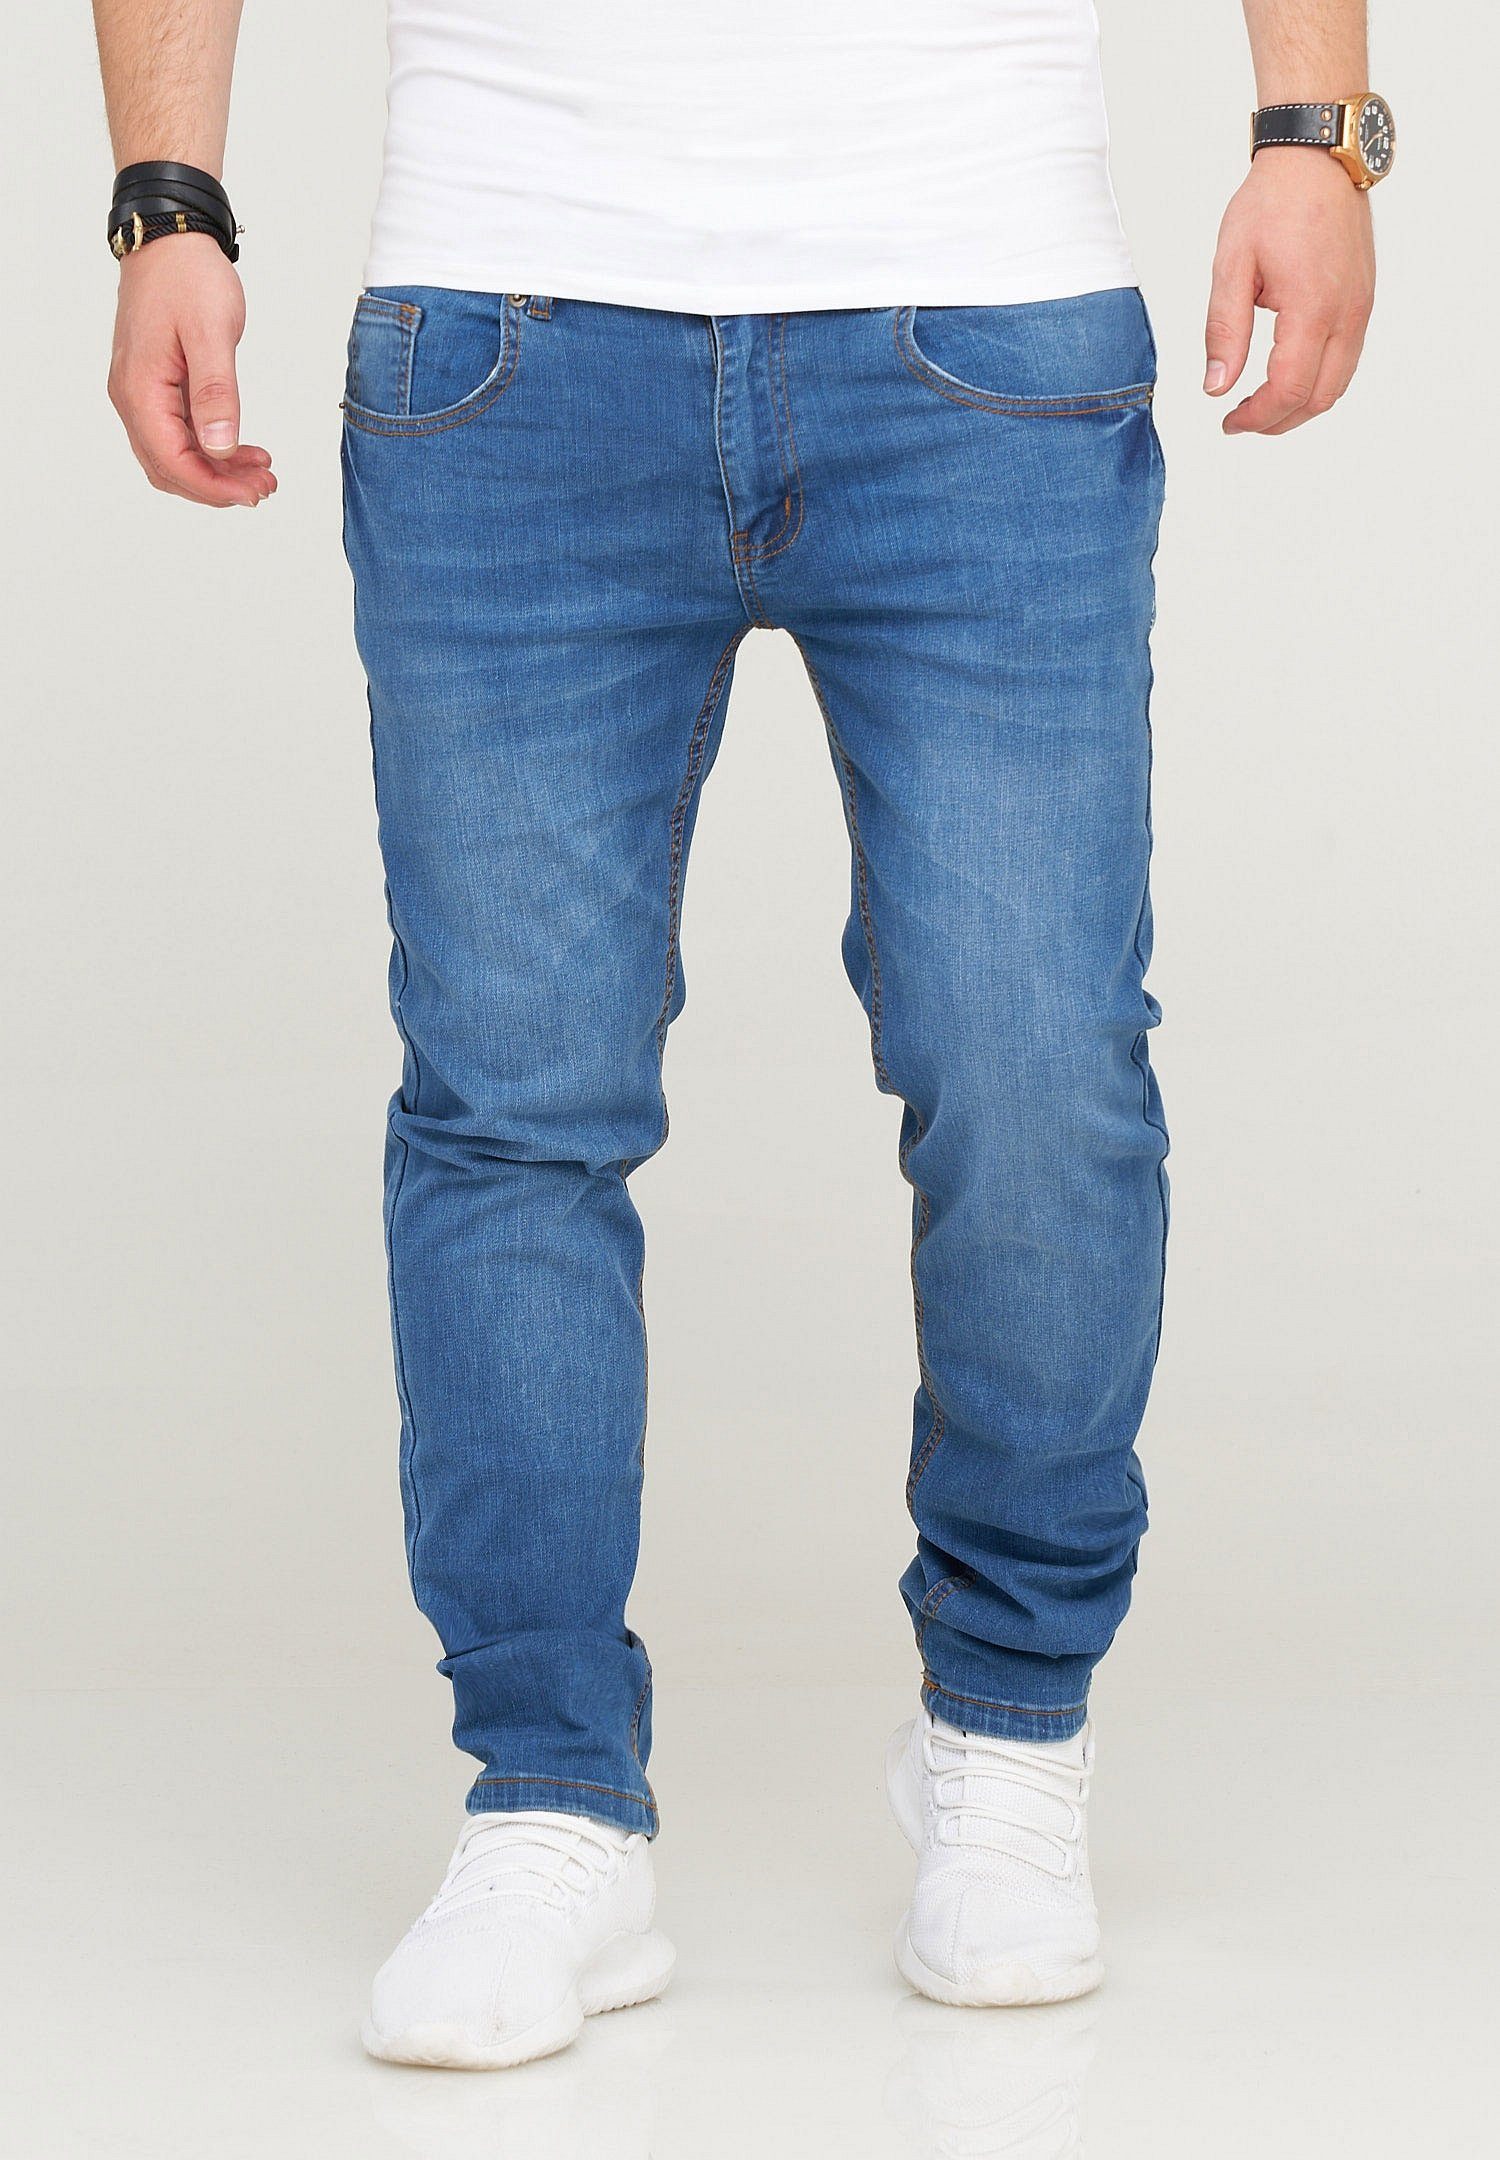 SOULSTAR Slim-fit-Jeans QUIRIN im klassischen 5-Pocket-Stil hellblau